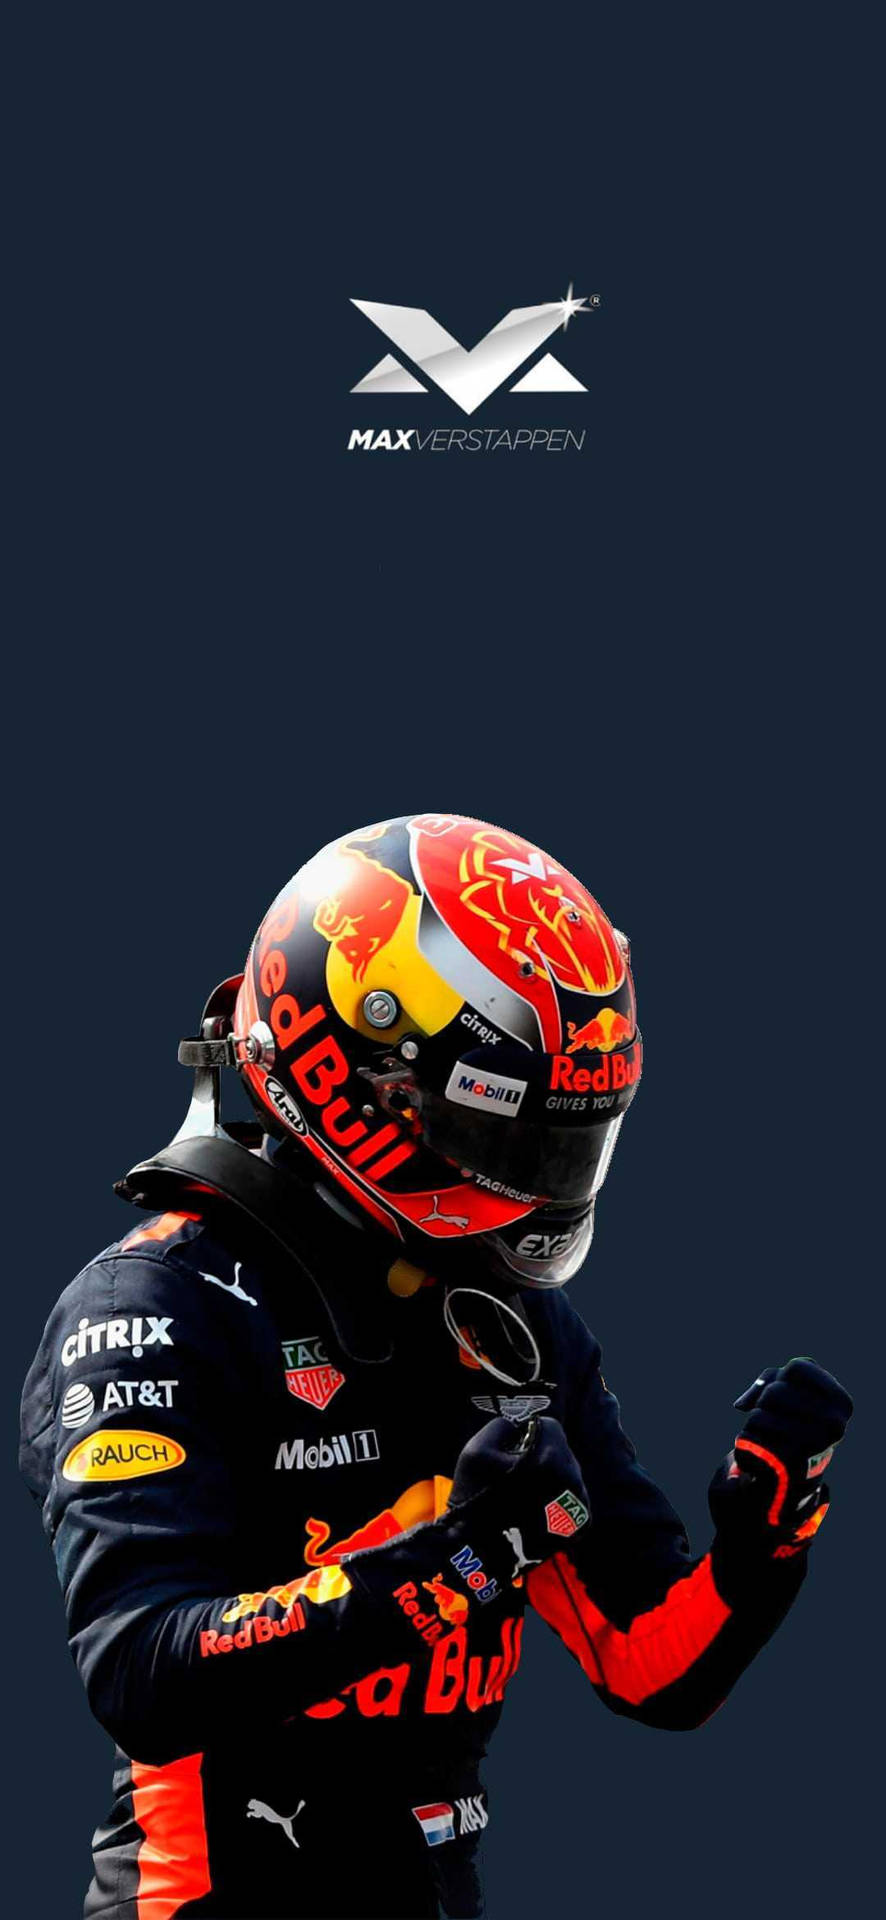 Max Verstappen In His Red Bull Racing Suit